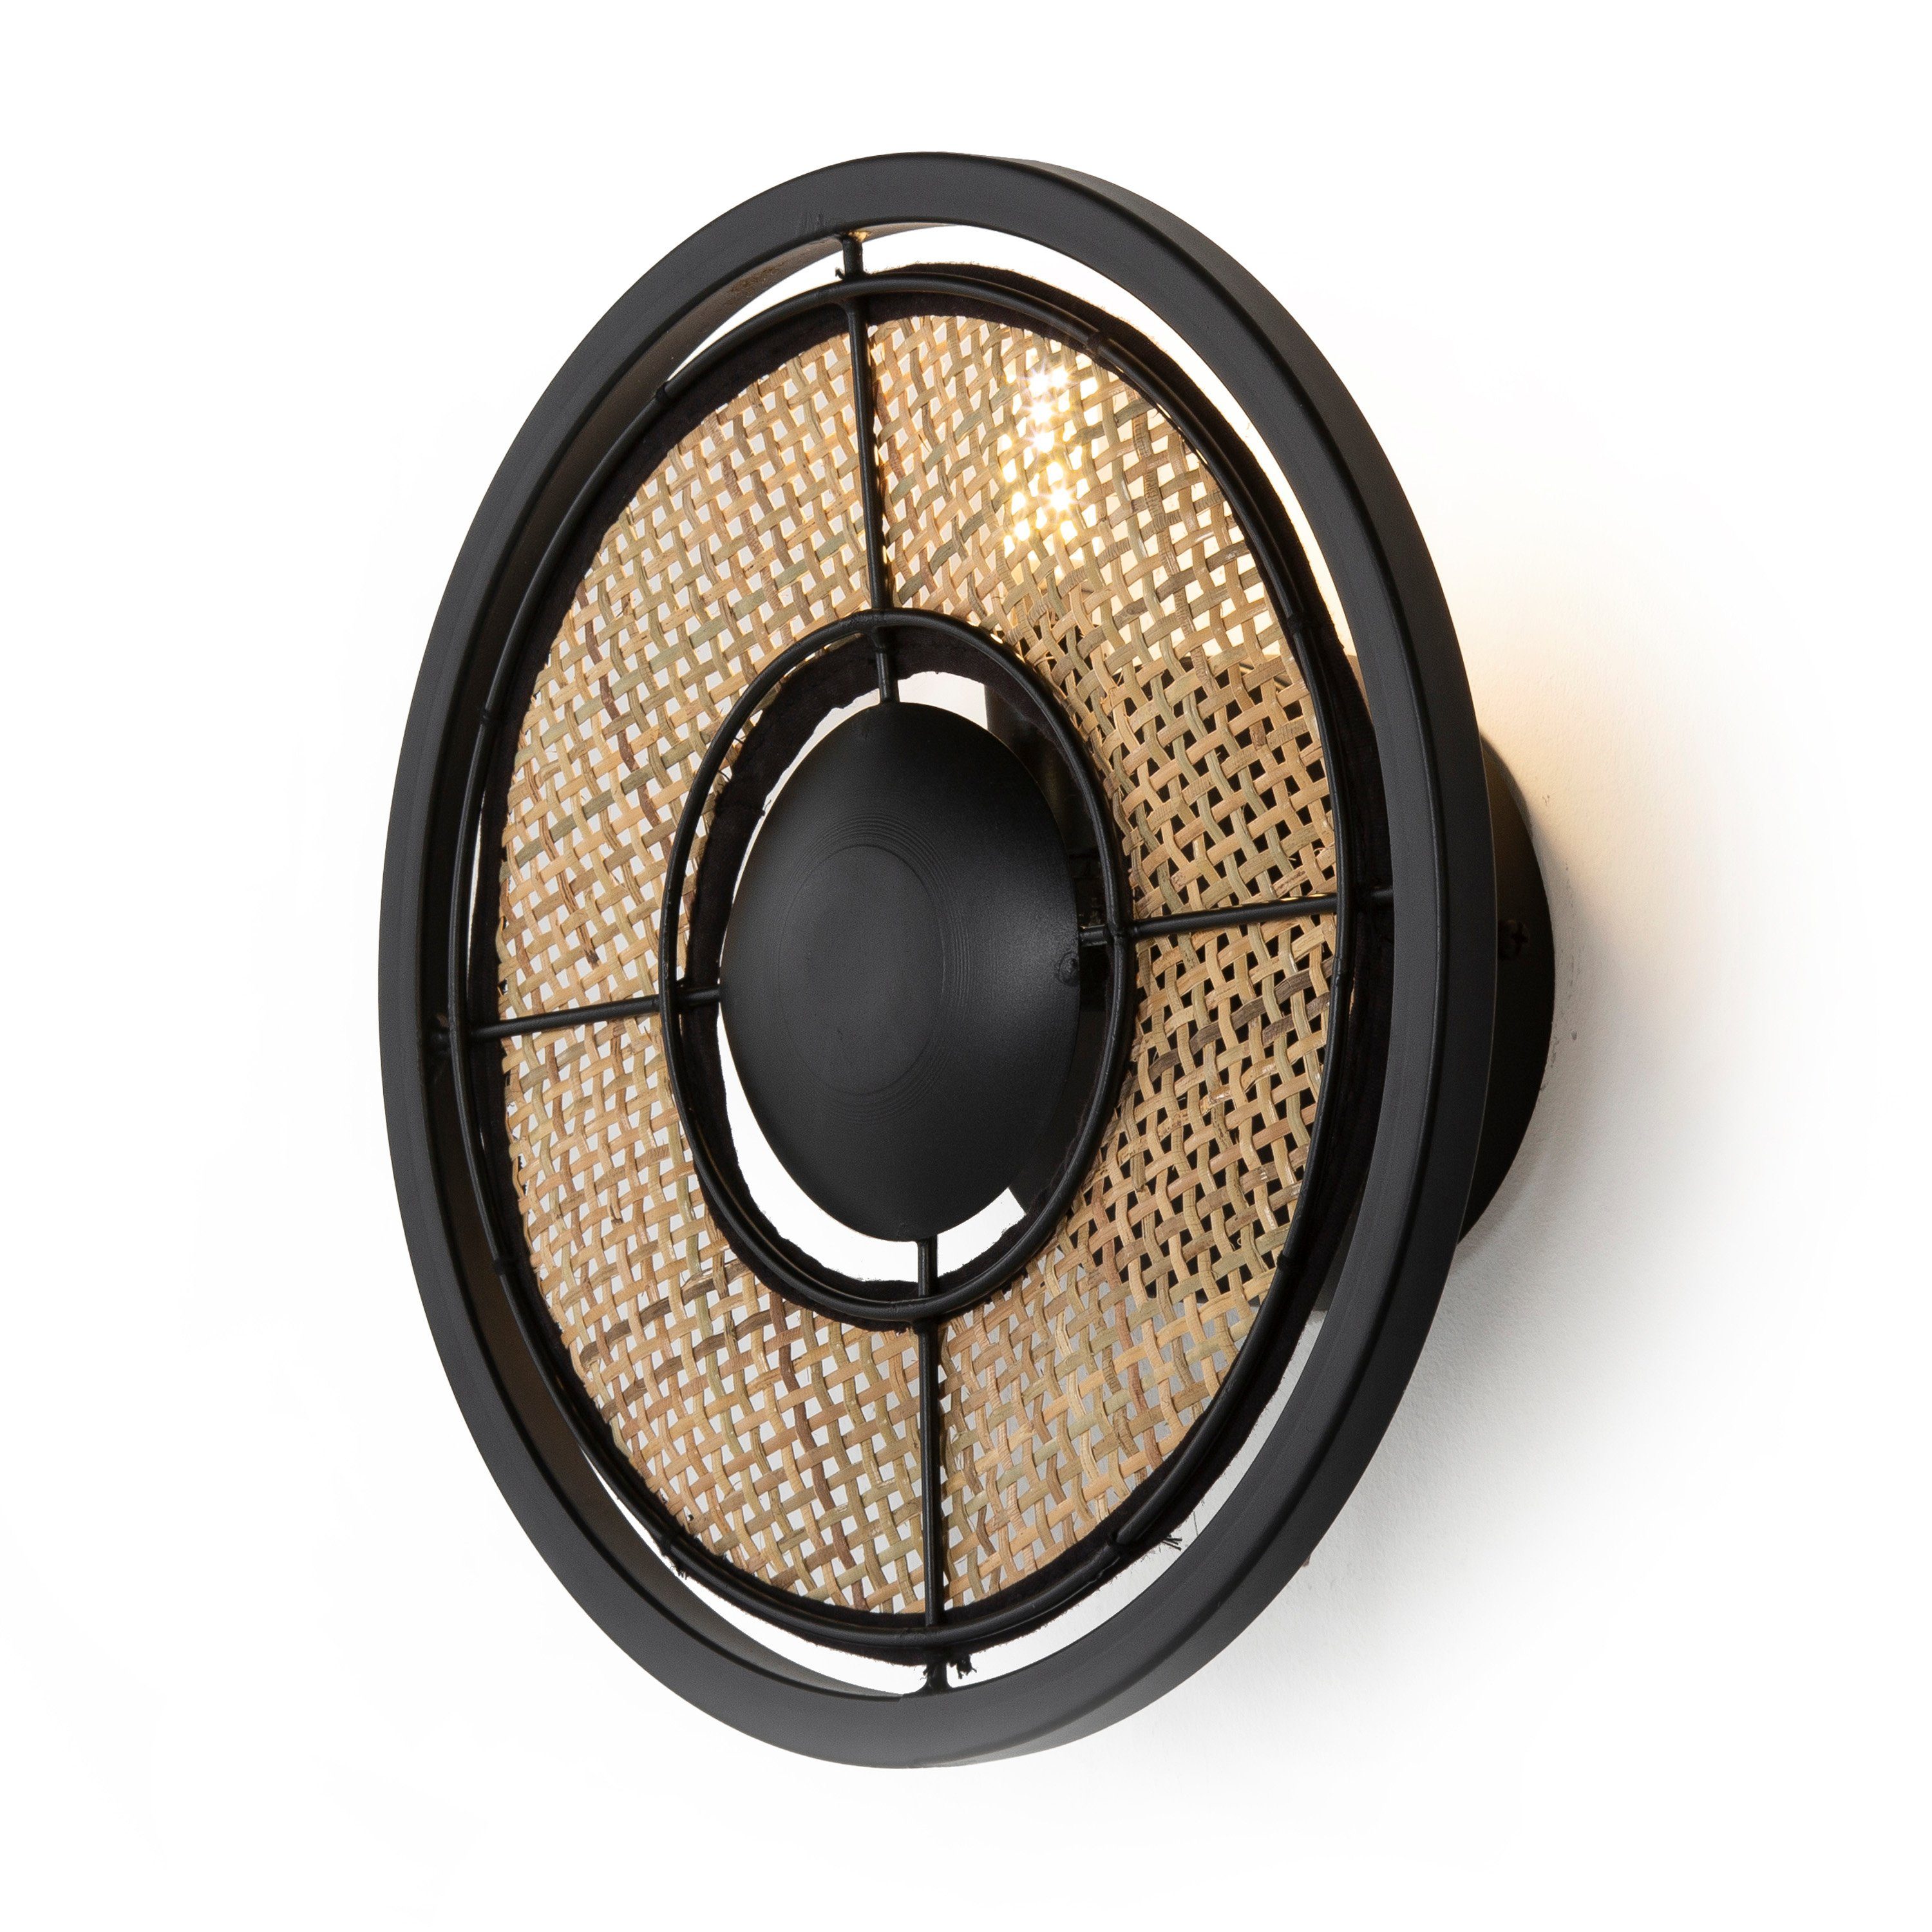 Cosy Home Ideas Wandleuchte Wandlampe Metall schwarz mit Rattan rund, ohne Leuchtmittel, warmweiß, Wandleuchte mit Geflecht